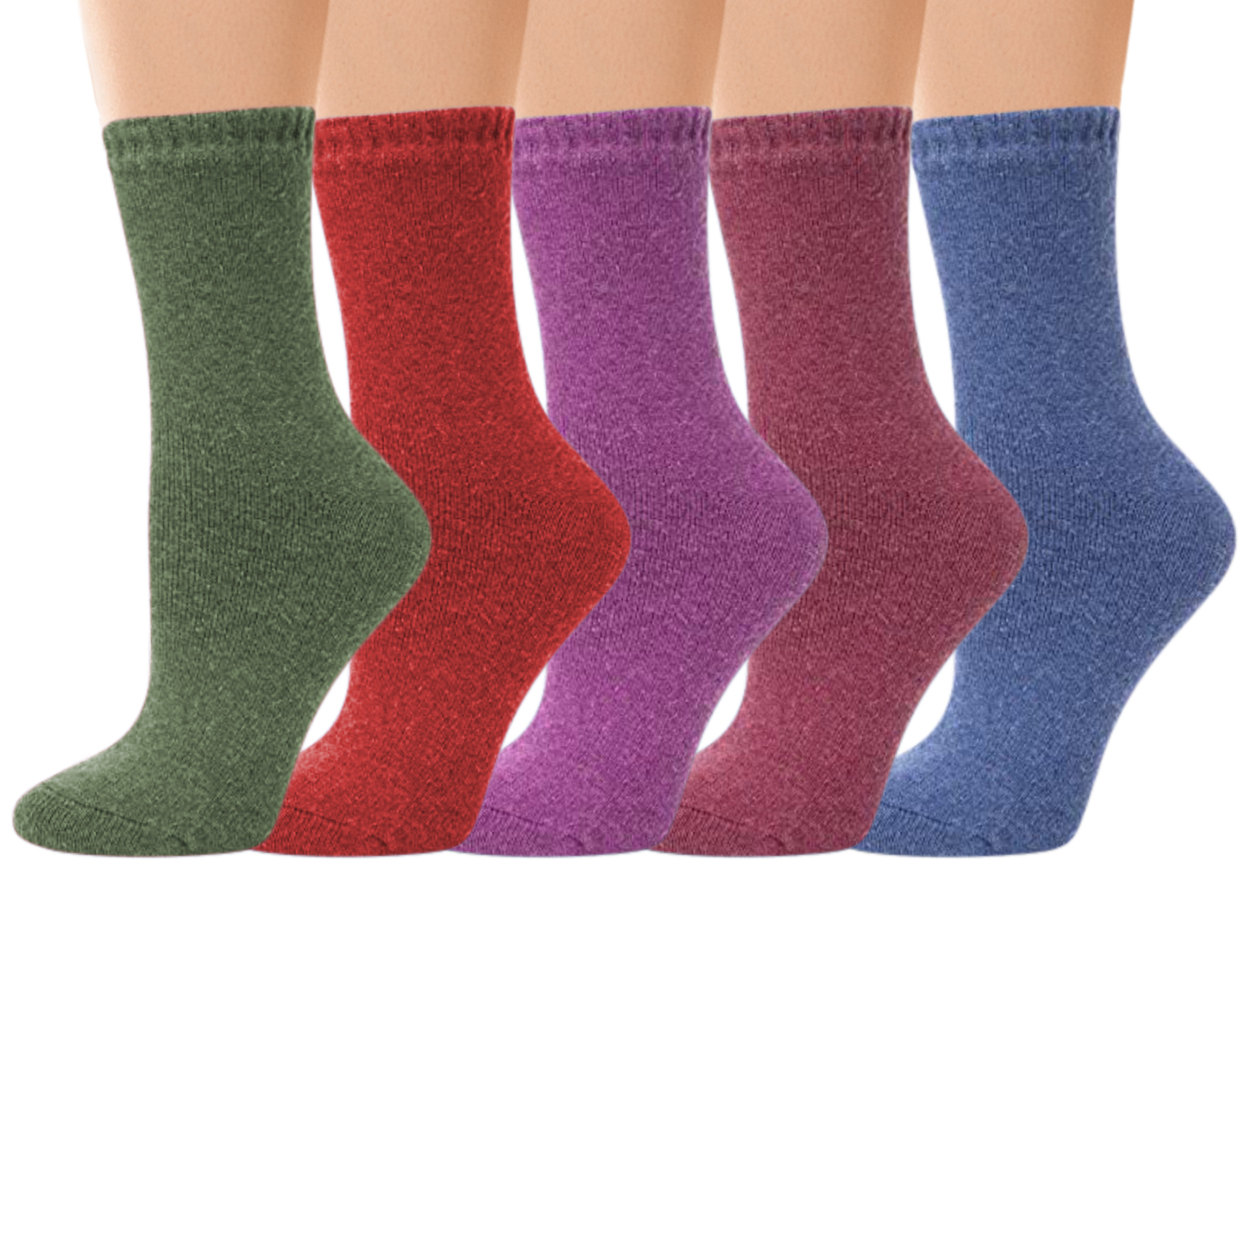 Multi-Pairs: Women's Warm Thick Merino Lamb Wool Winter Thermal Socks - 1-pairs